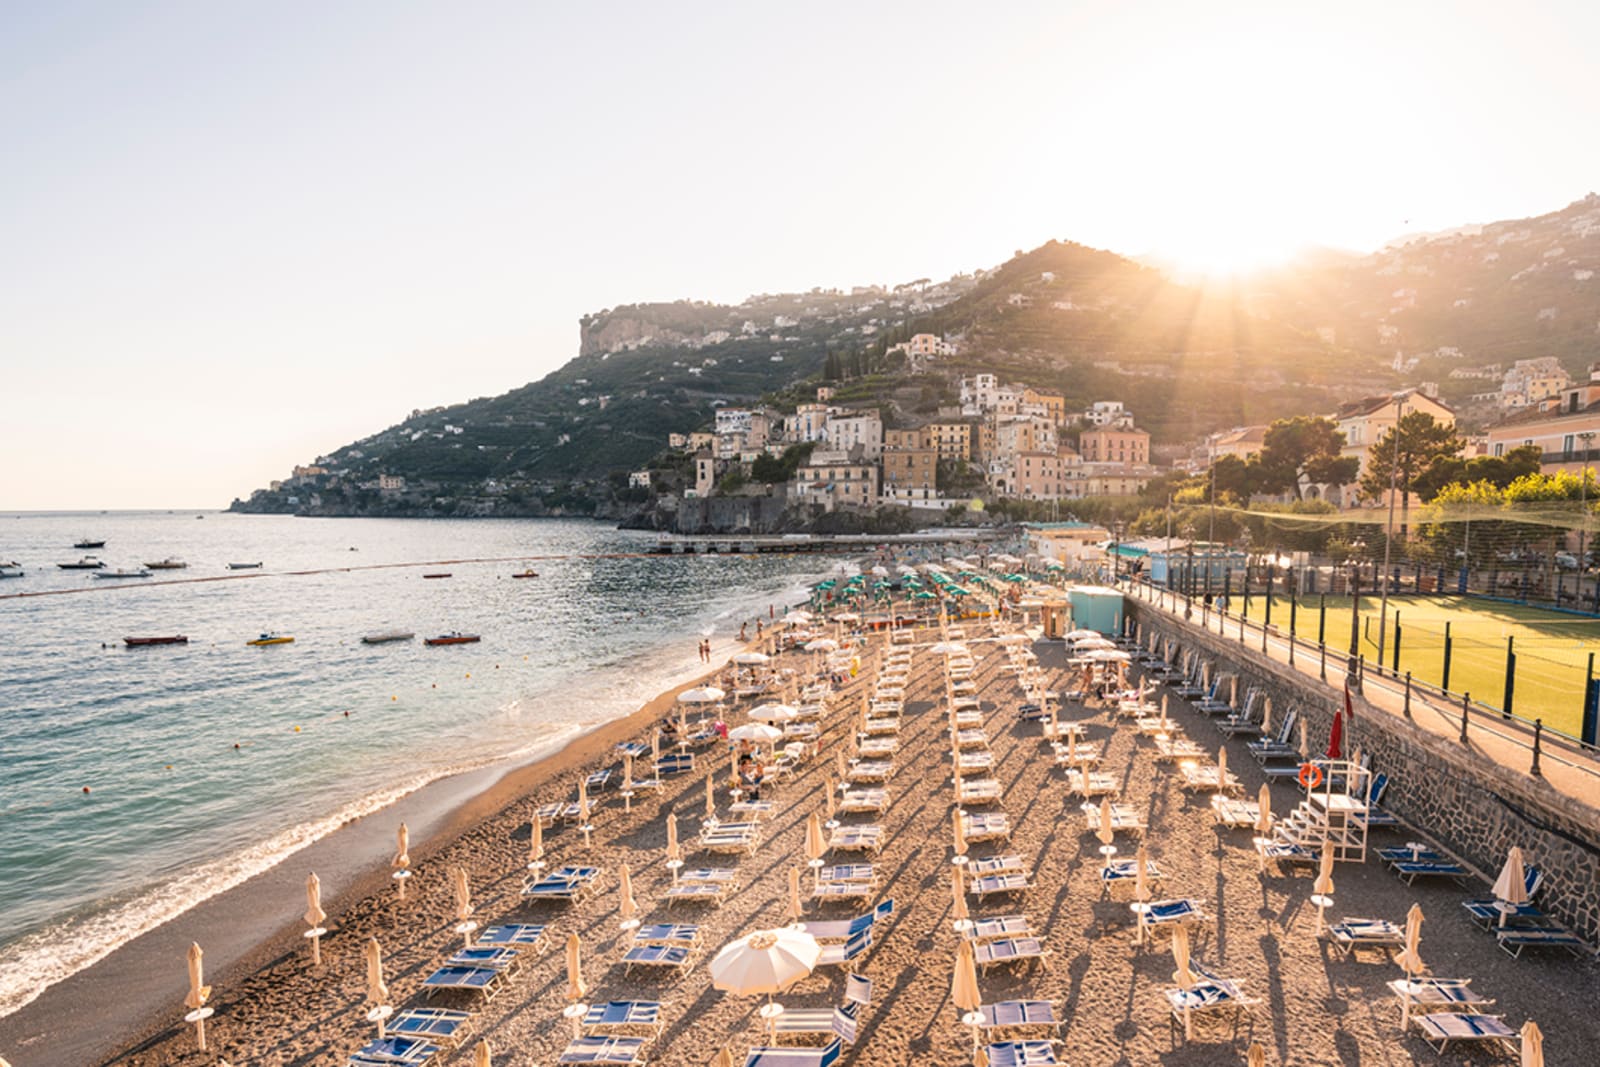 A beach on Italy's Amalfi Coast